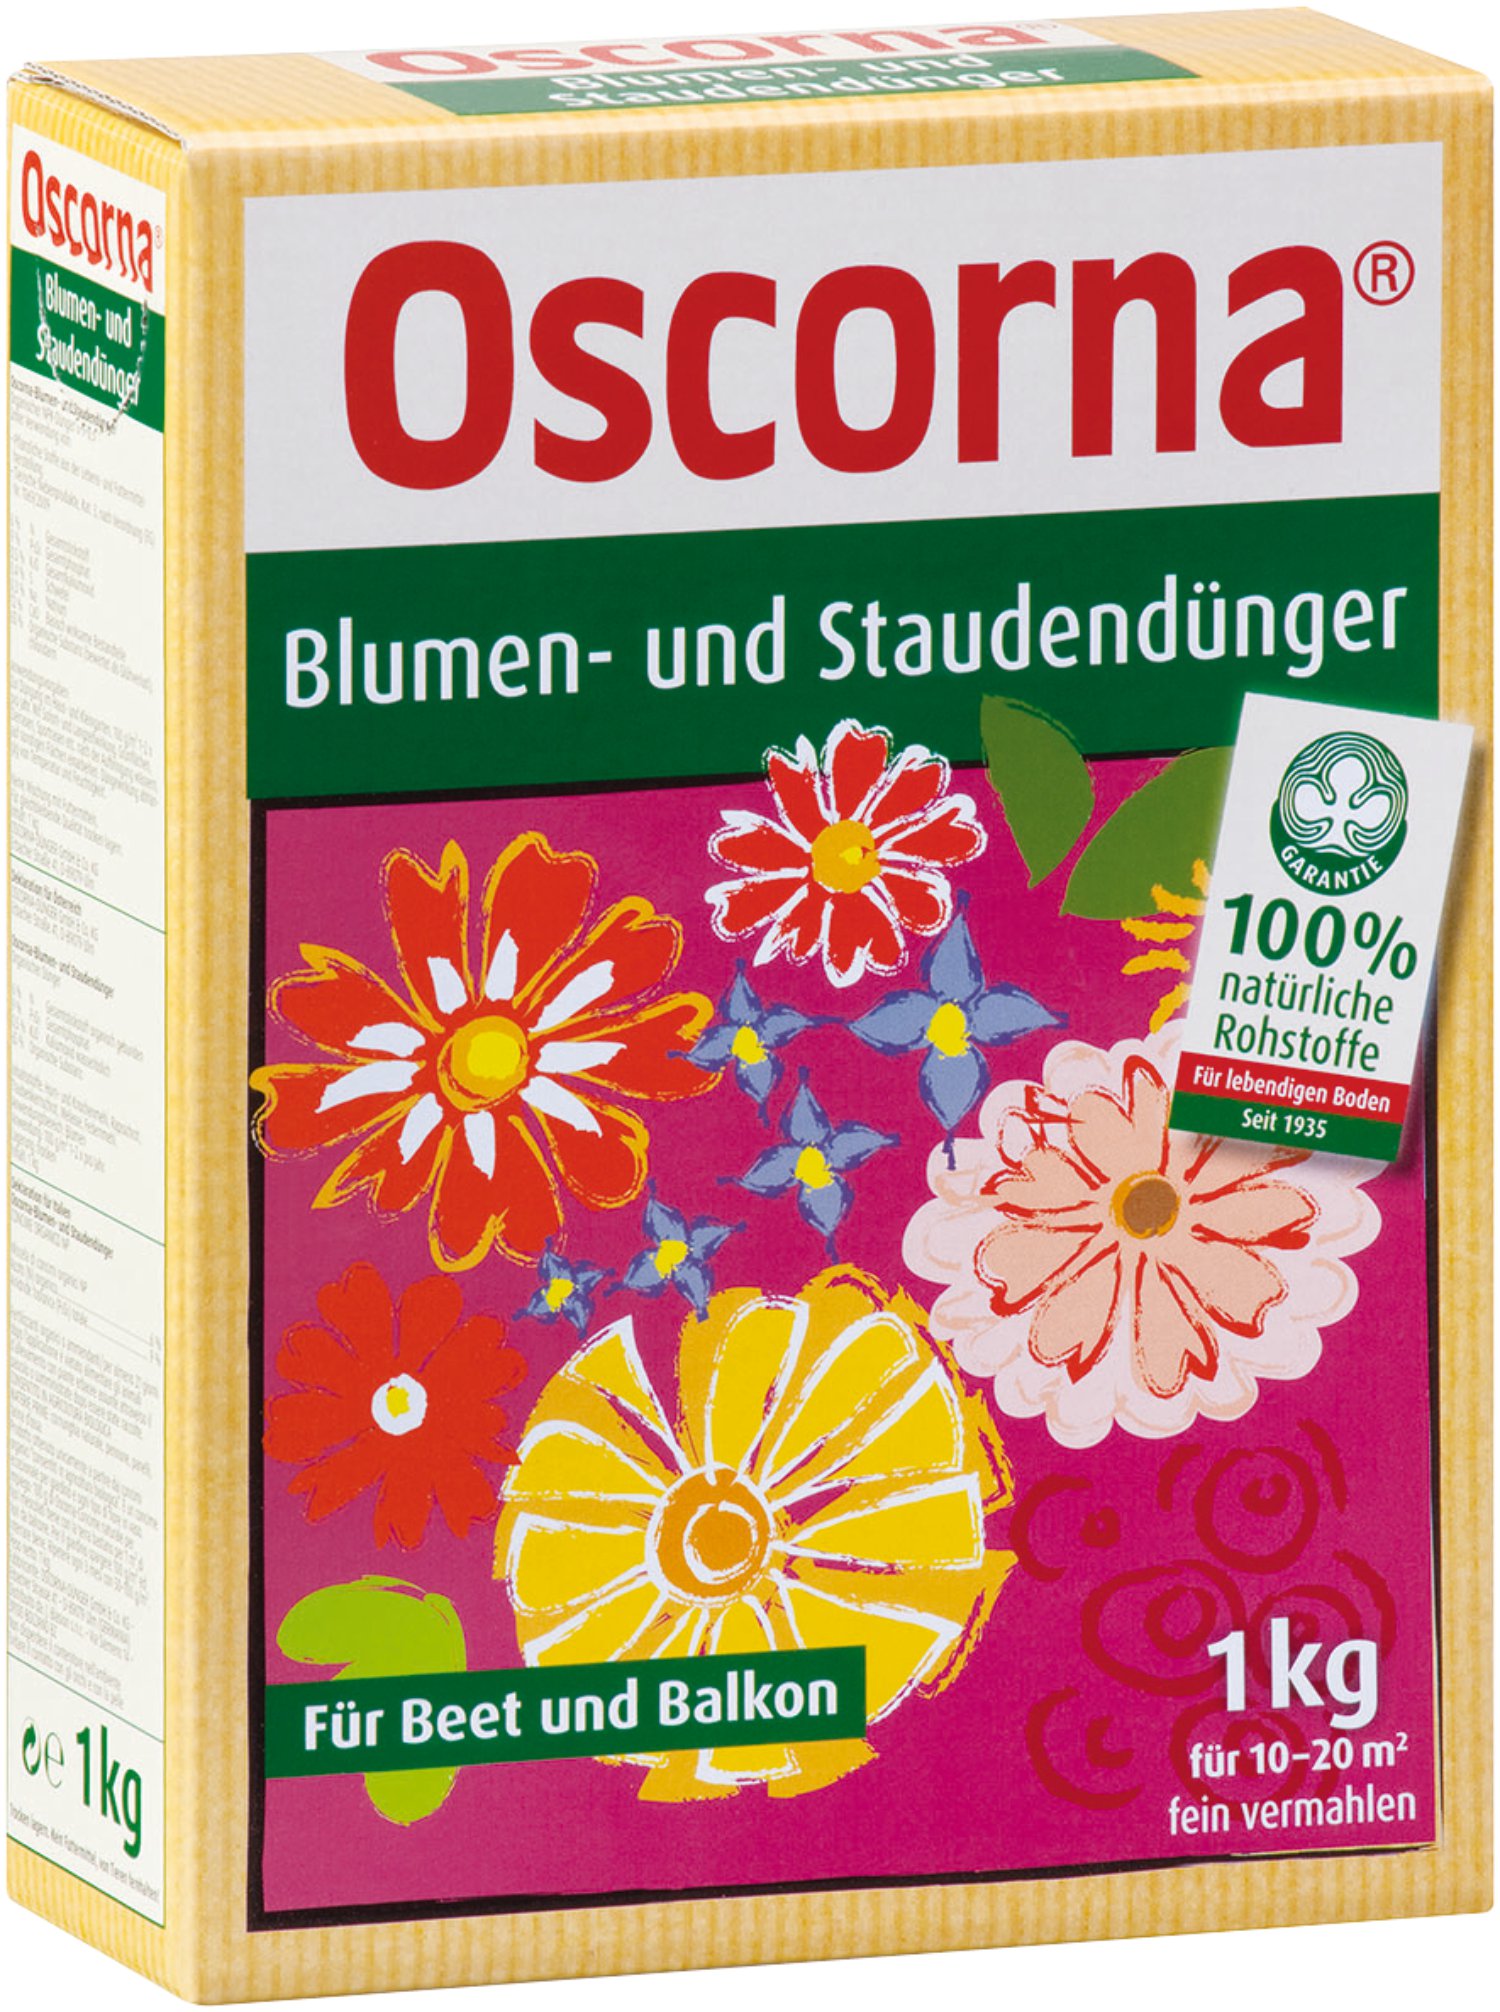 OSCORNA Blumen- und Staudendünger